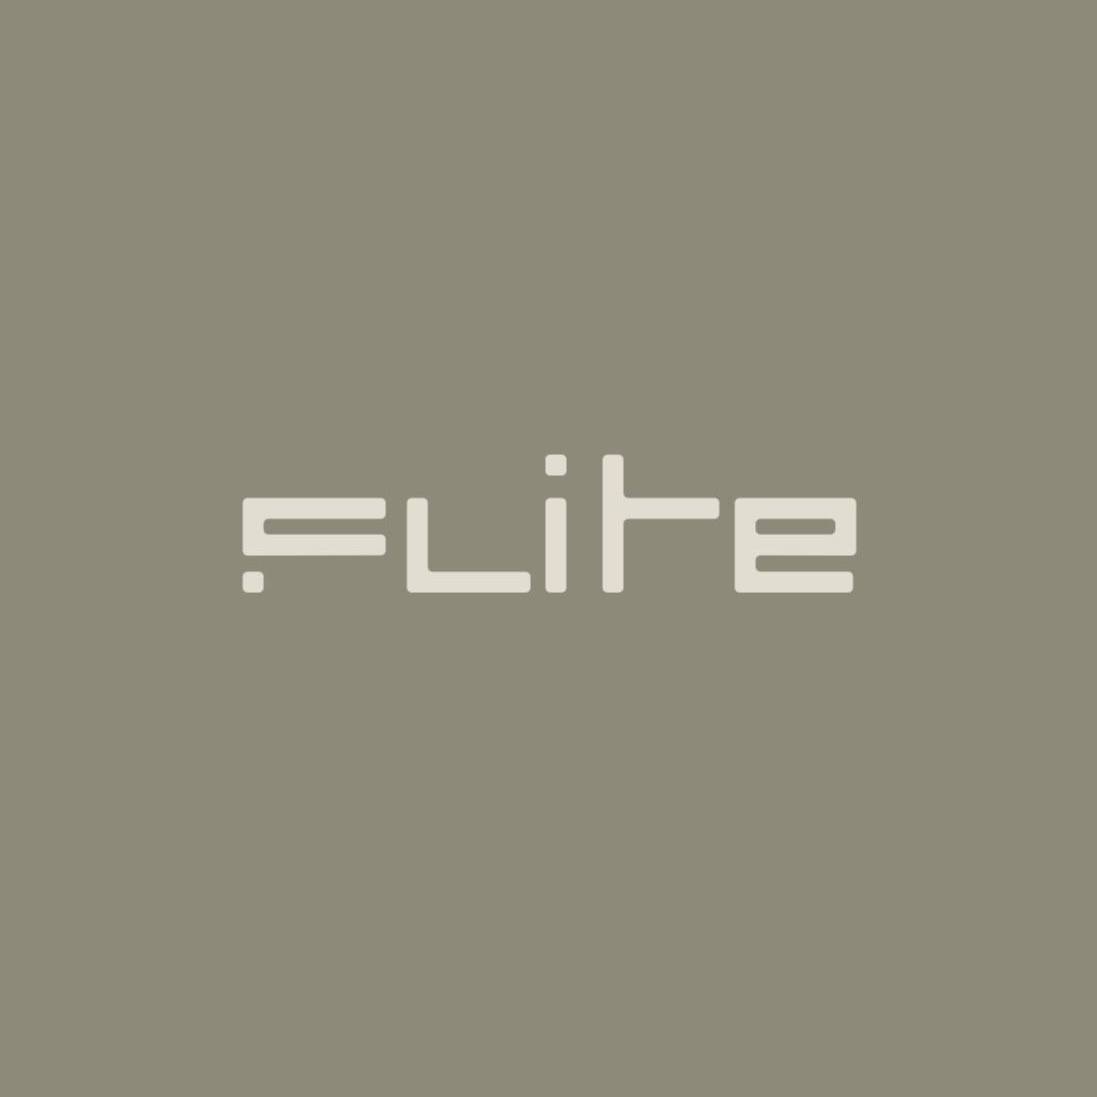 Flite board logo